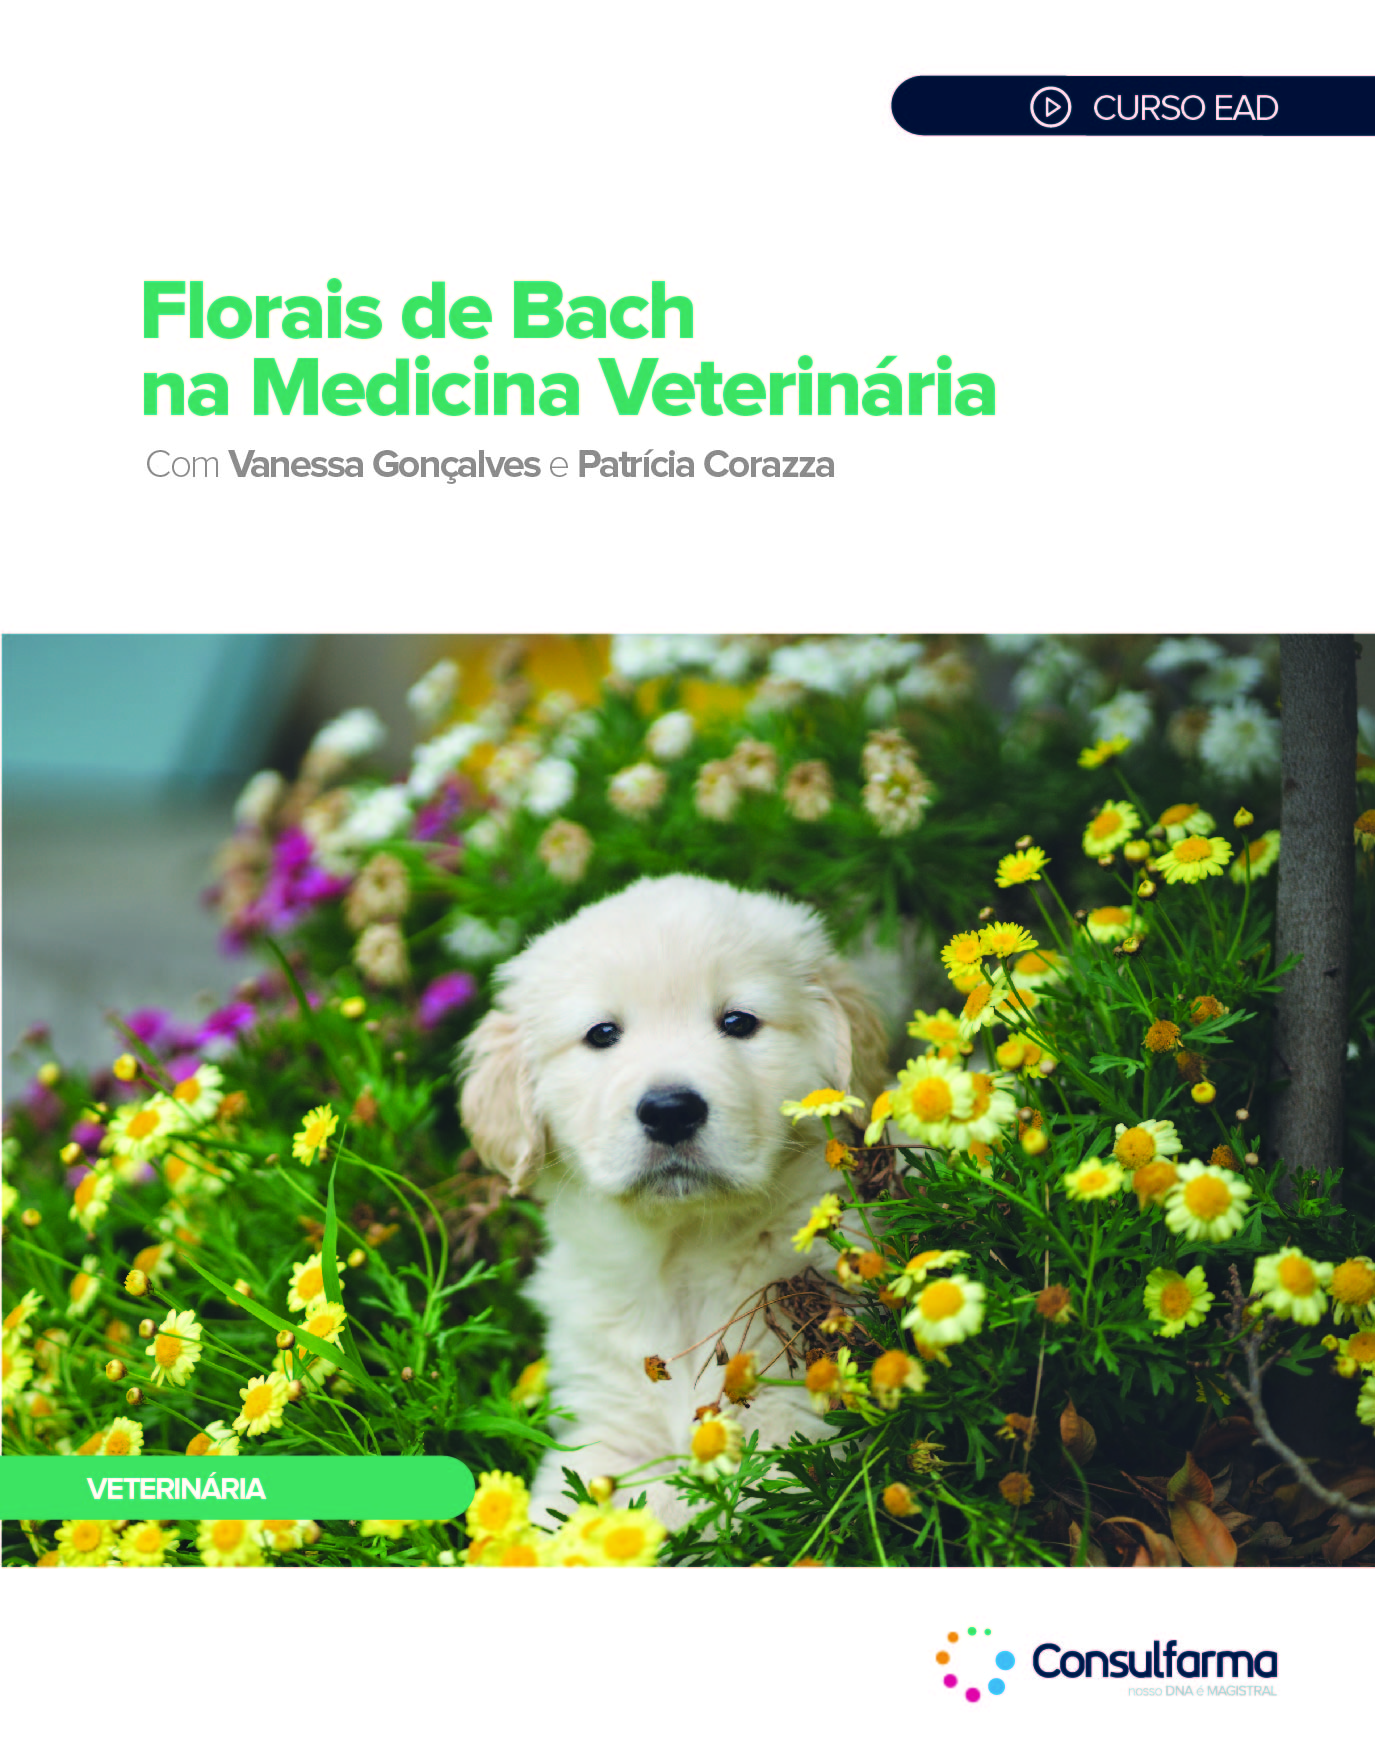 Florais de Bach na Medicina Veterinária